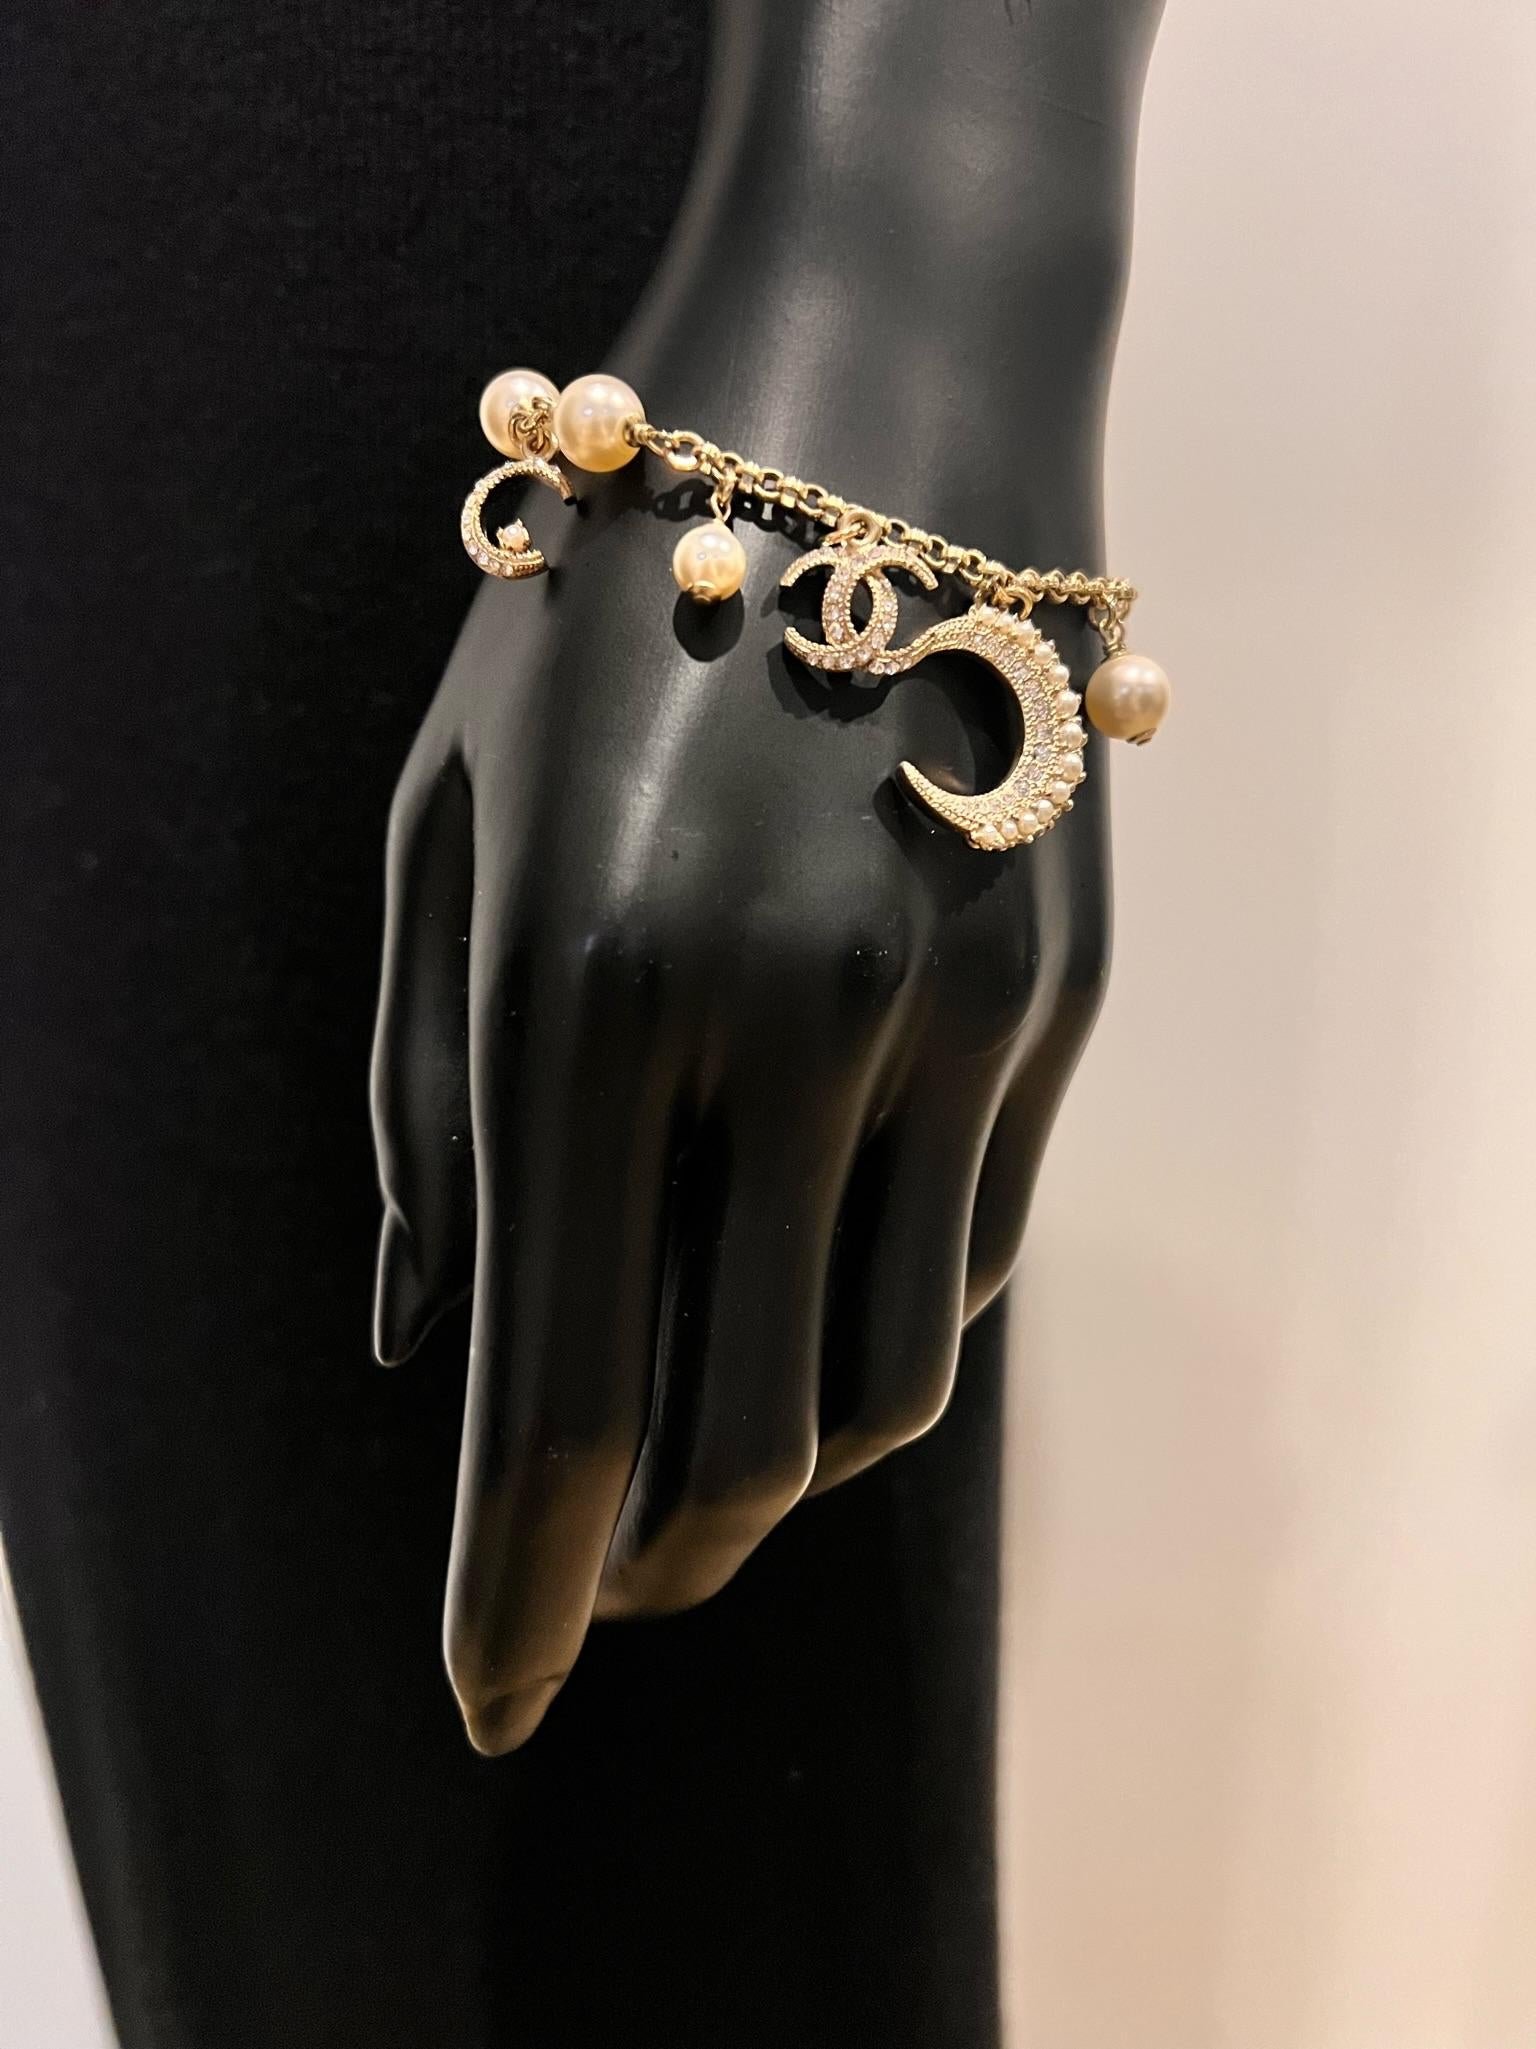 De la collection Cruise 2015. Bracelet à breloques Chanel CC Crescent Moon en métal doré, avec stations en fausses perles et fermoir à mousqueton. Comprend une pochette et une boîte à bijoux. Type de métal : Métal doré
Marques : Signature du